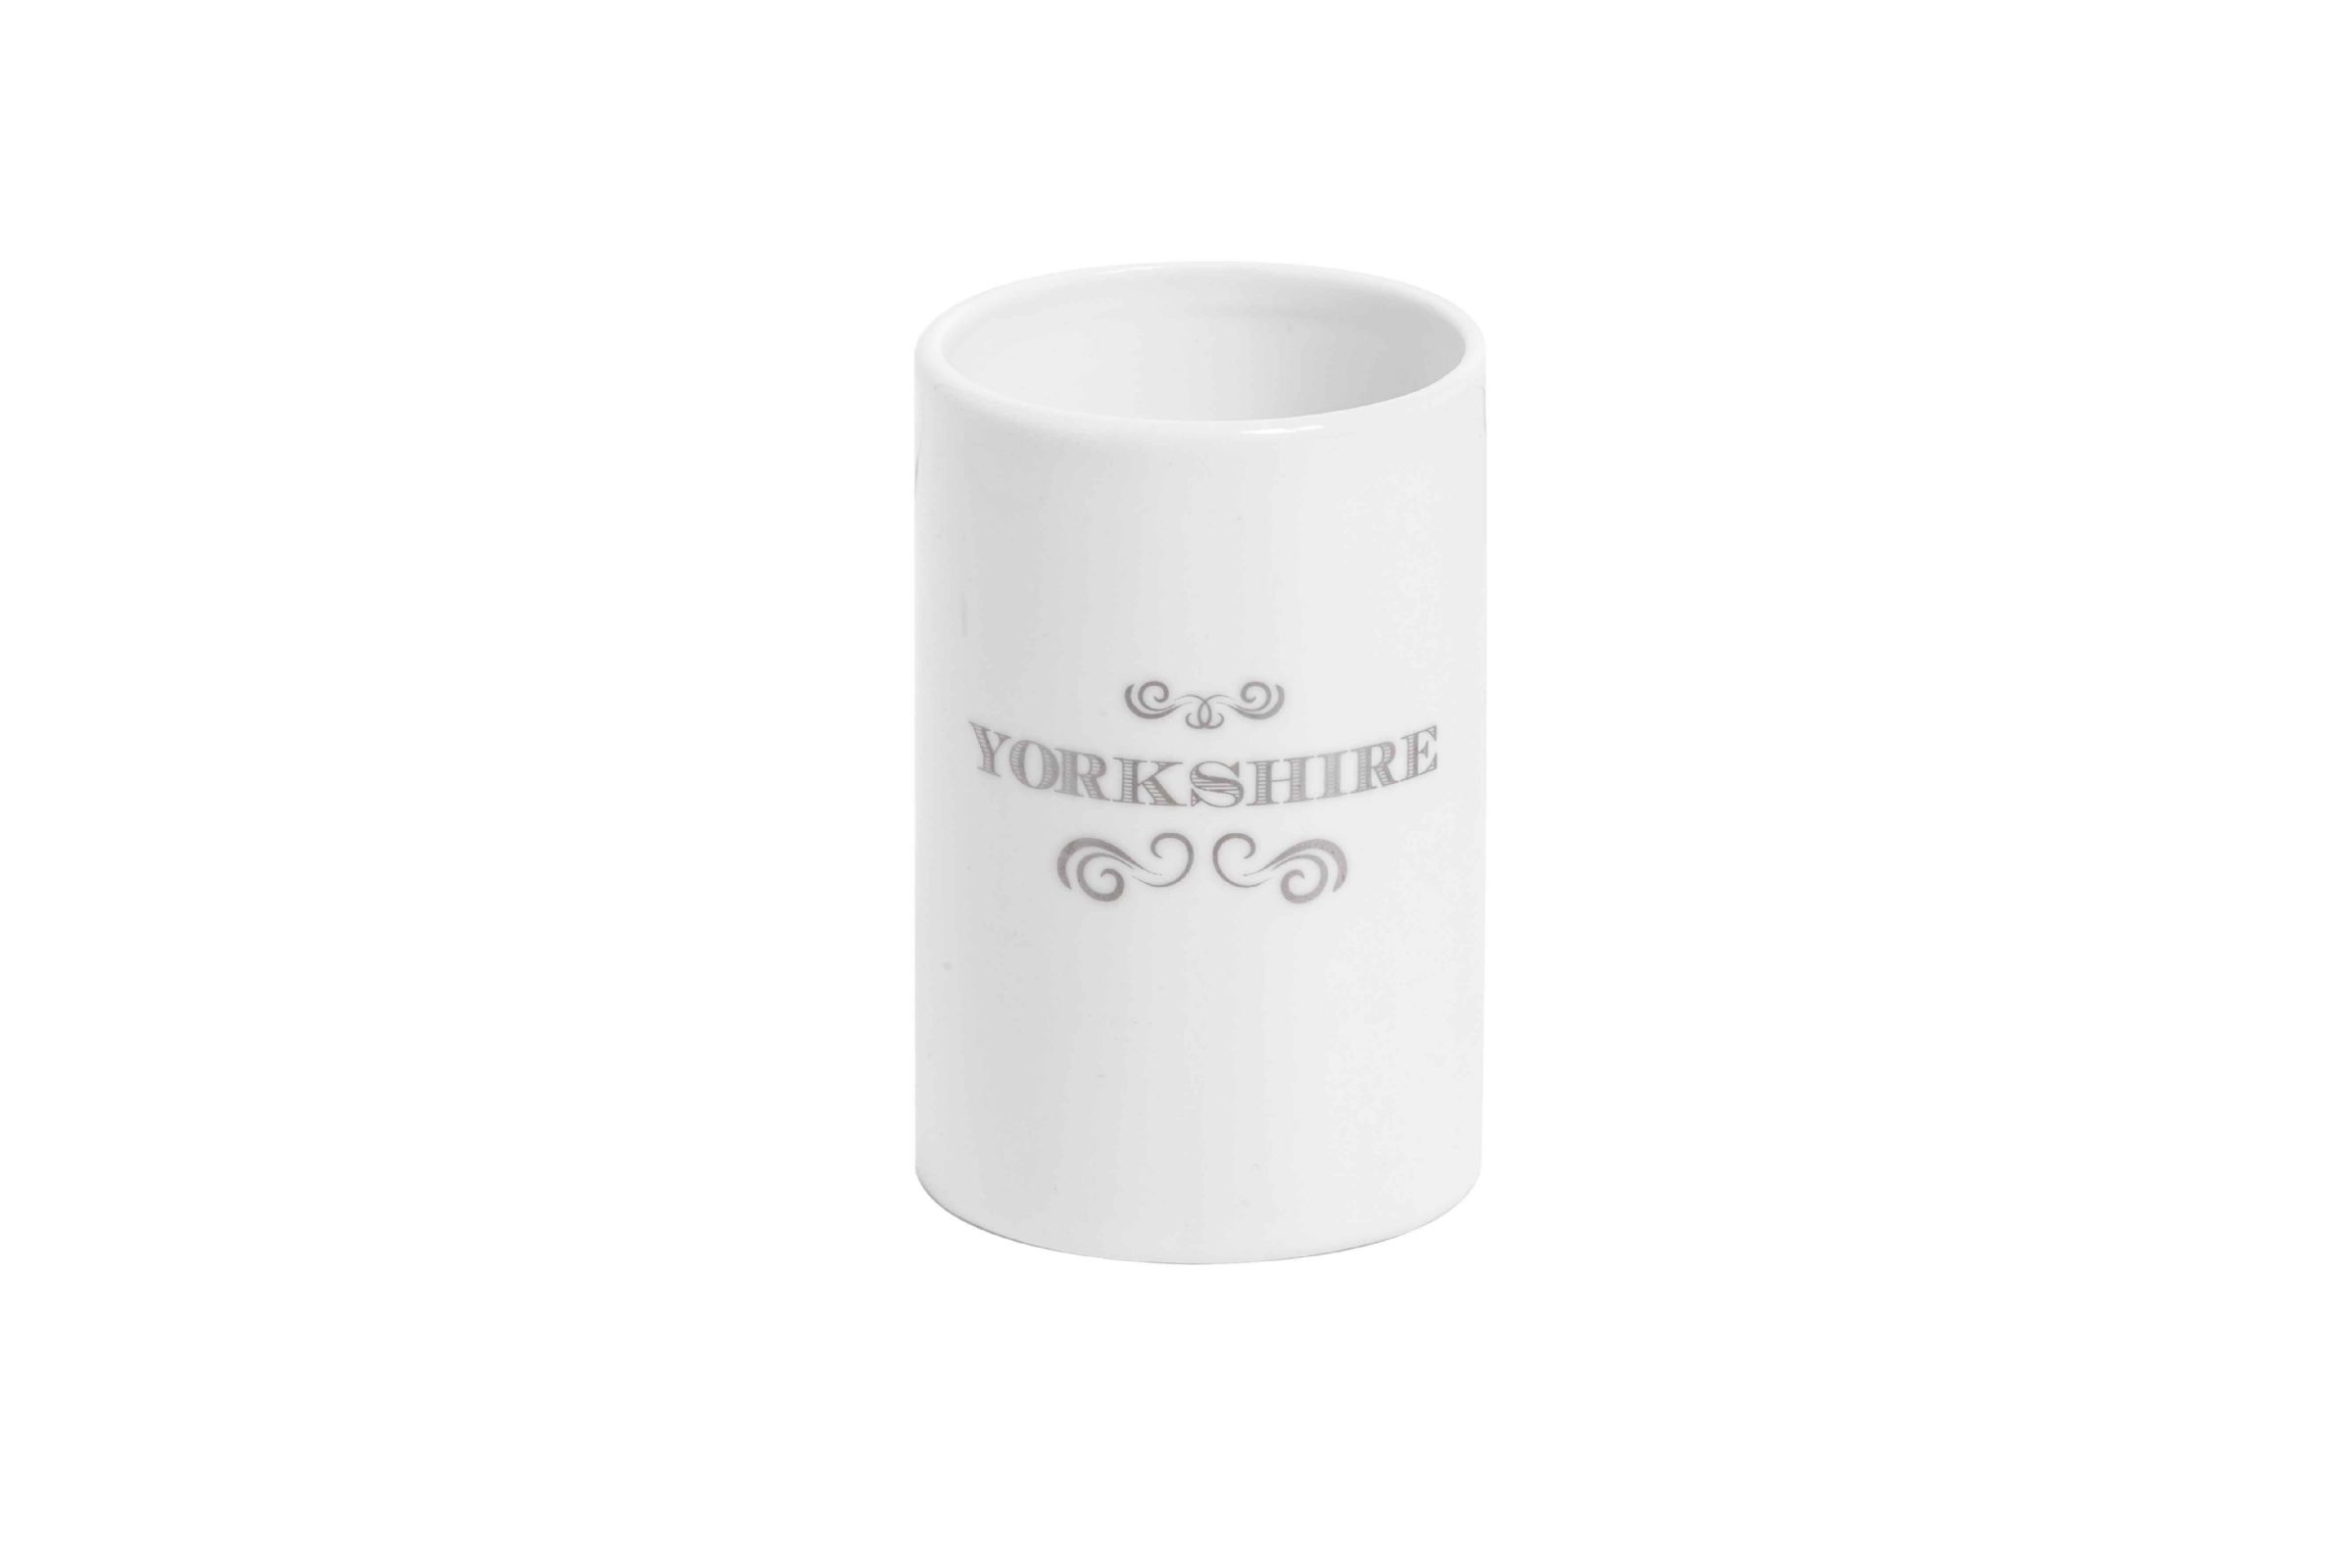 Set accessori bagno Yorkshire - Porta spazzolini Yorkshire